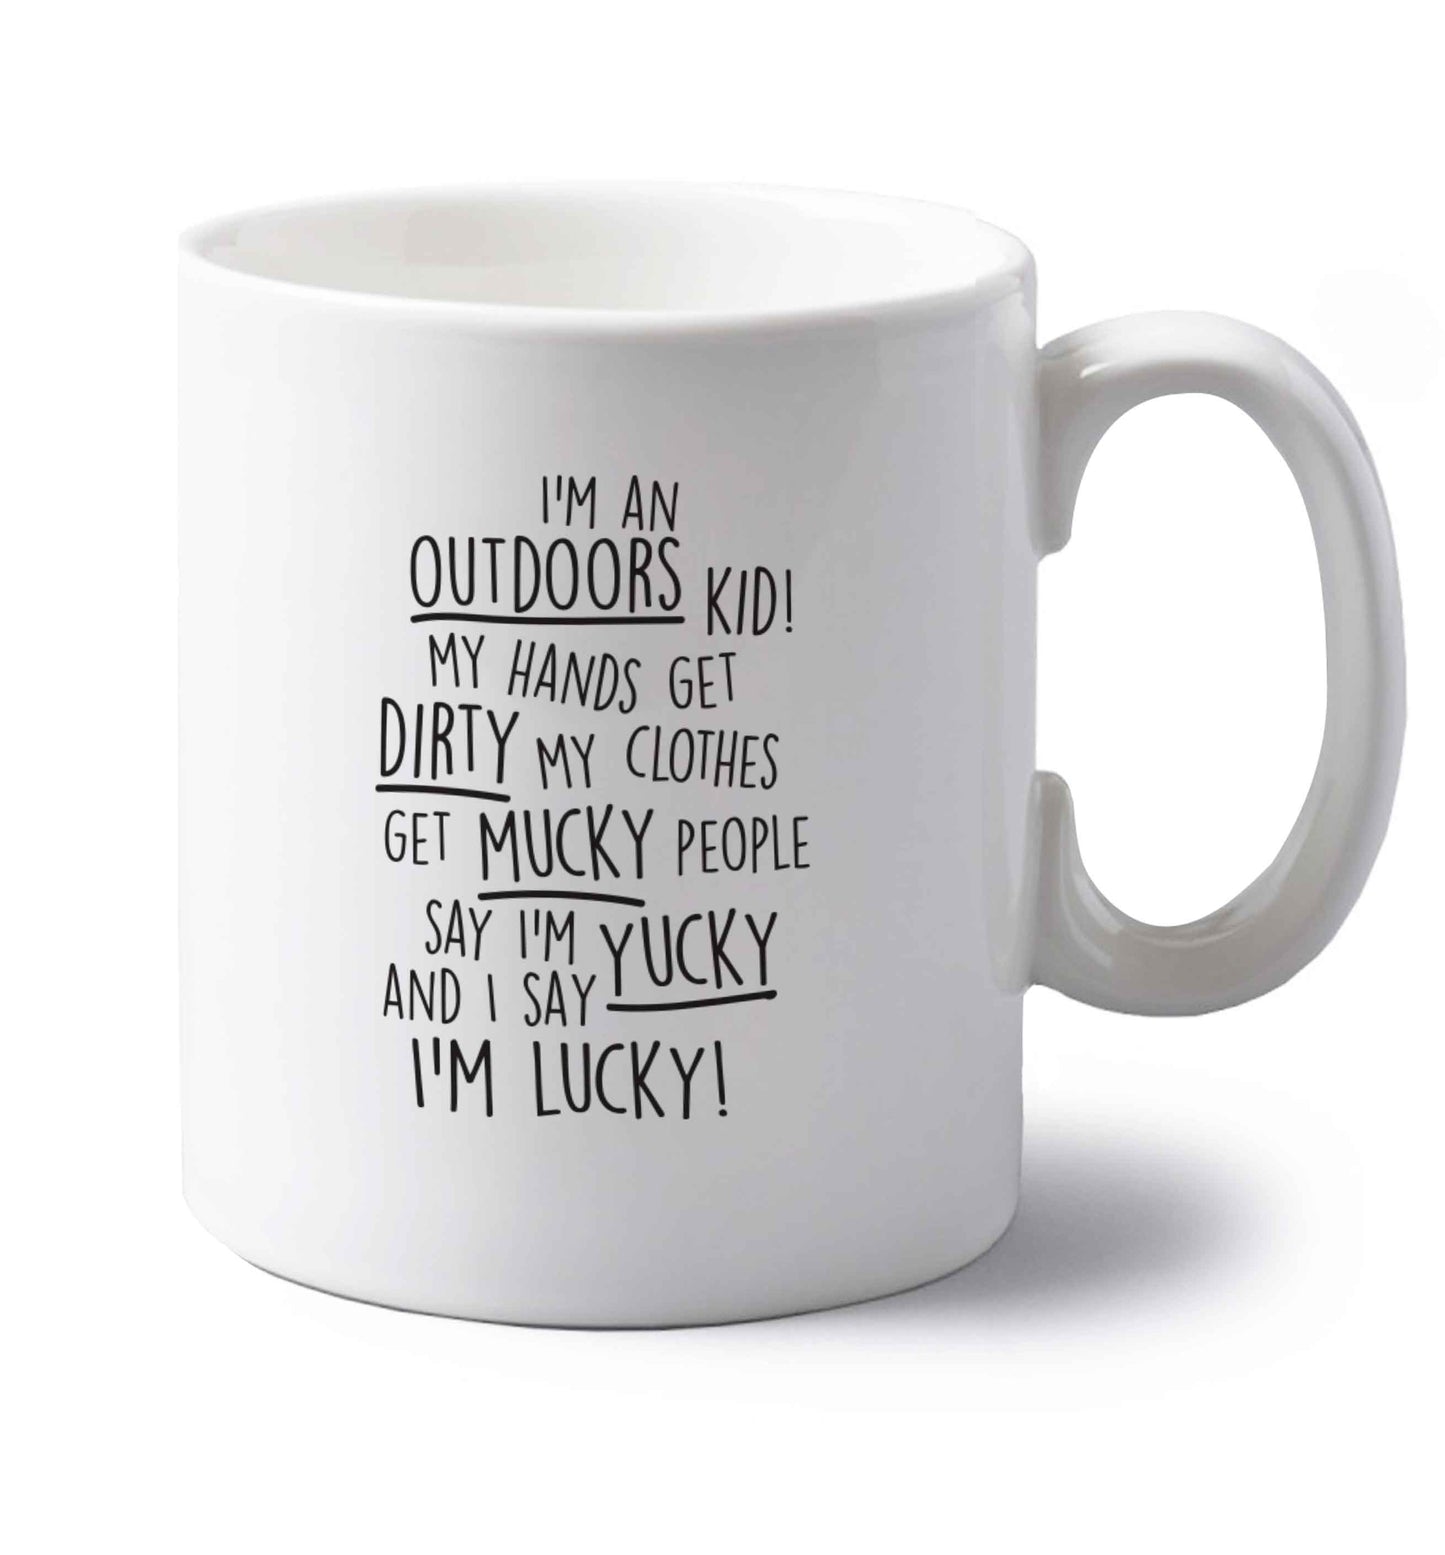 I'm an outdoors kid poem left handed white ceramic mug 